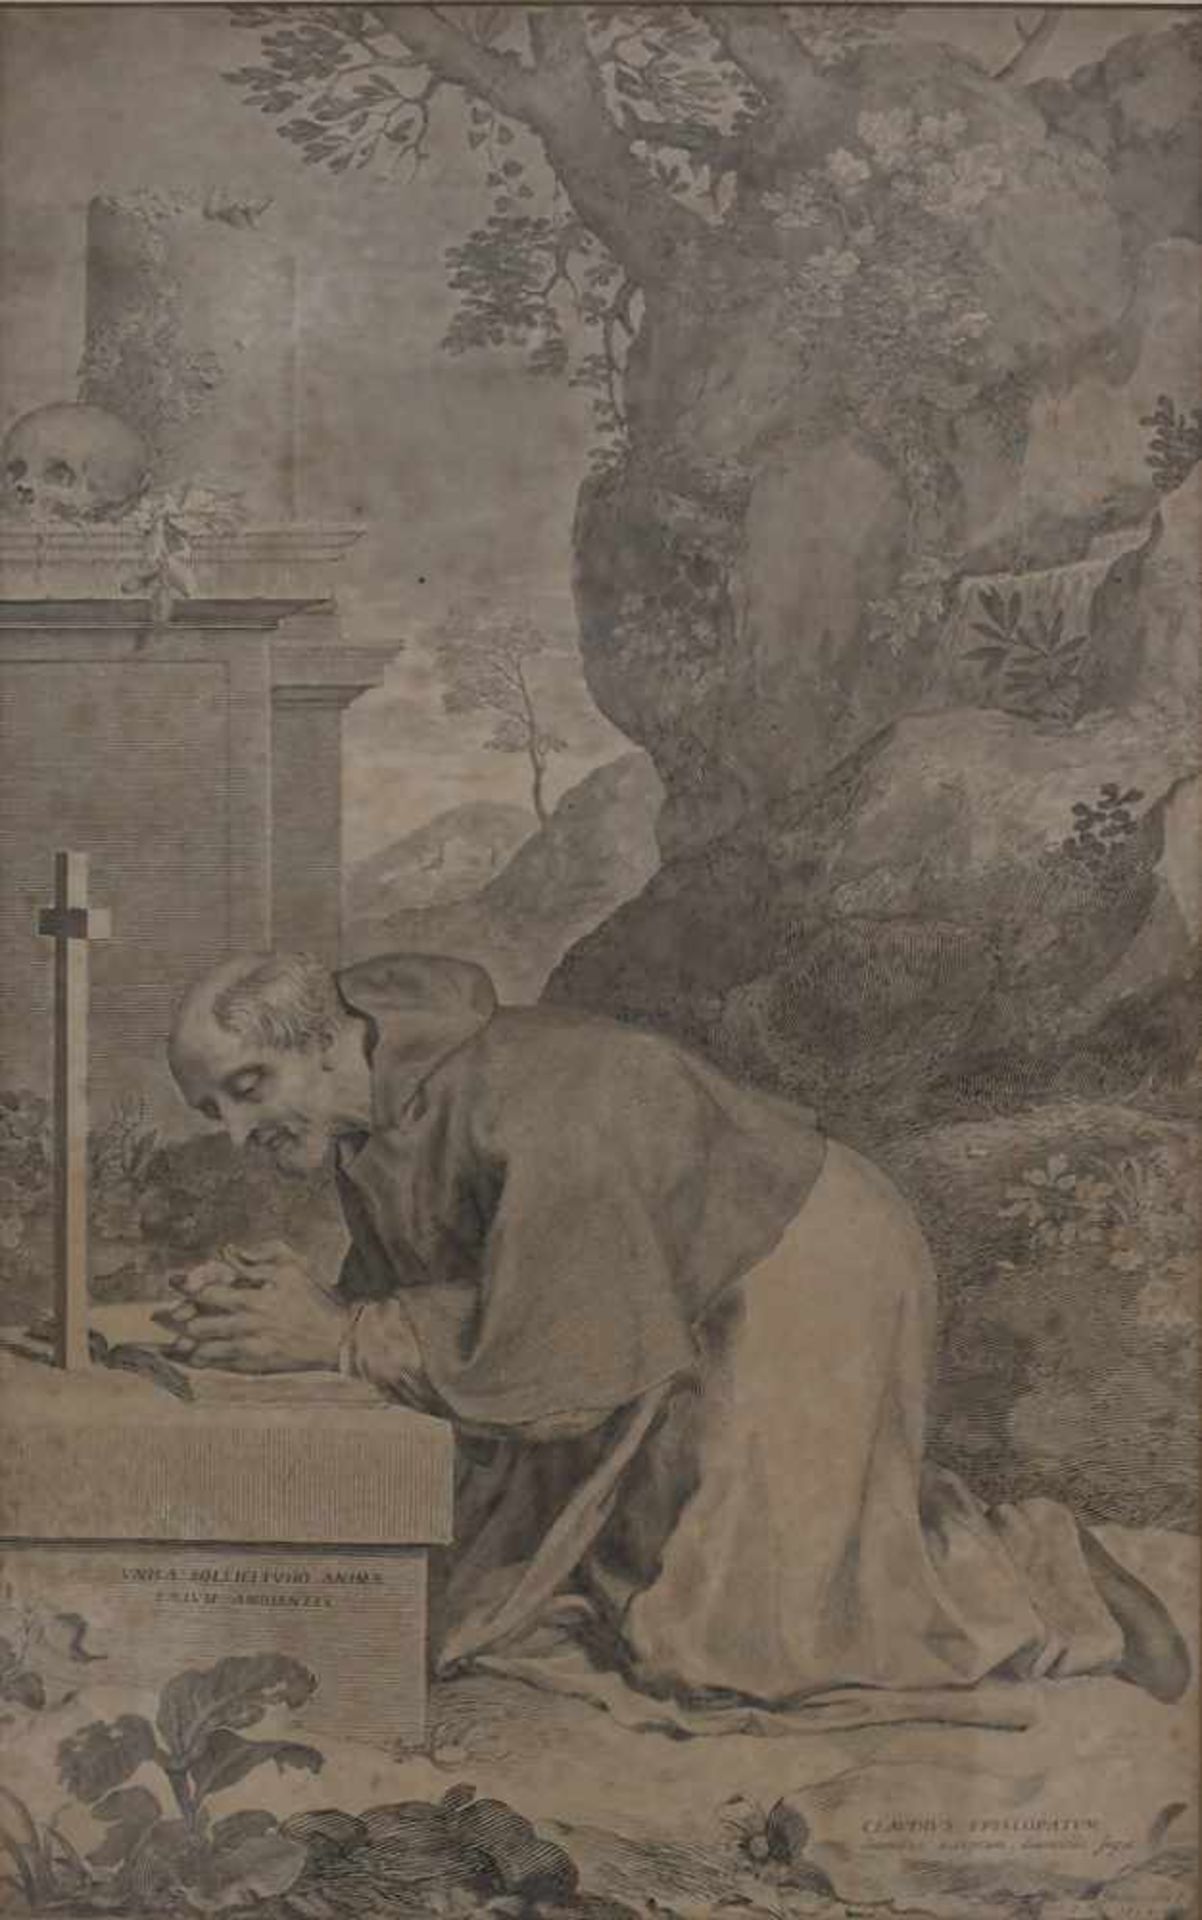 Claude Mellan (1598-1688), 'Claudius in Anbetung des Kreuzes' / 'Claudius in adoration of the